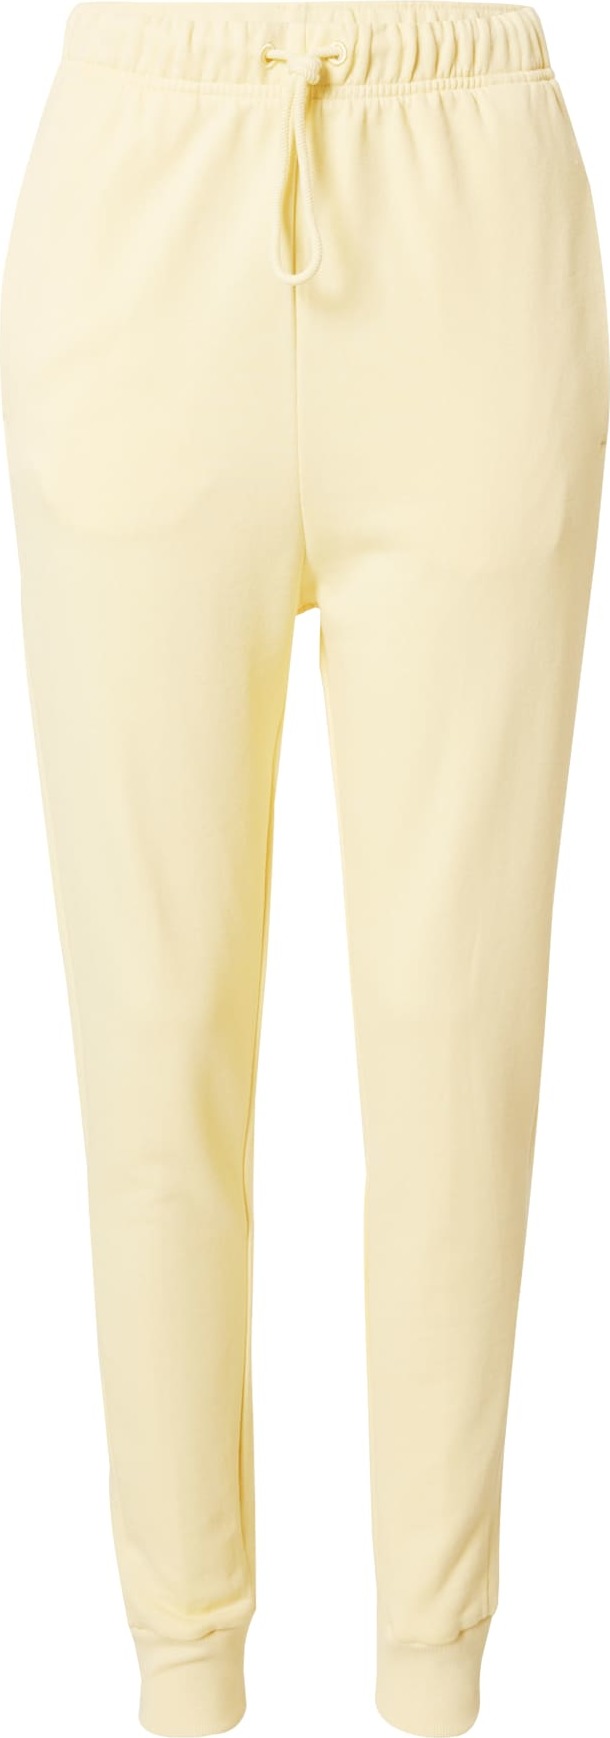 ADIDAS PERFORMANCE Sportovní kalhoty pastelově žlutá